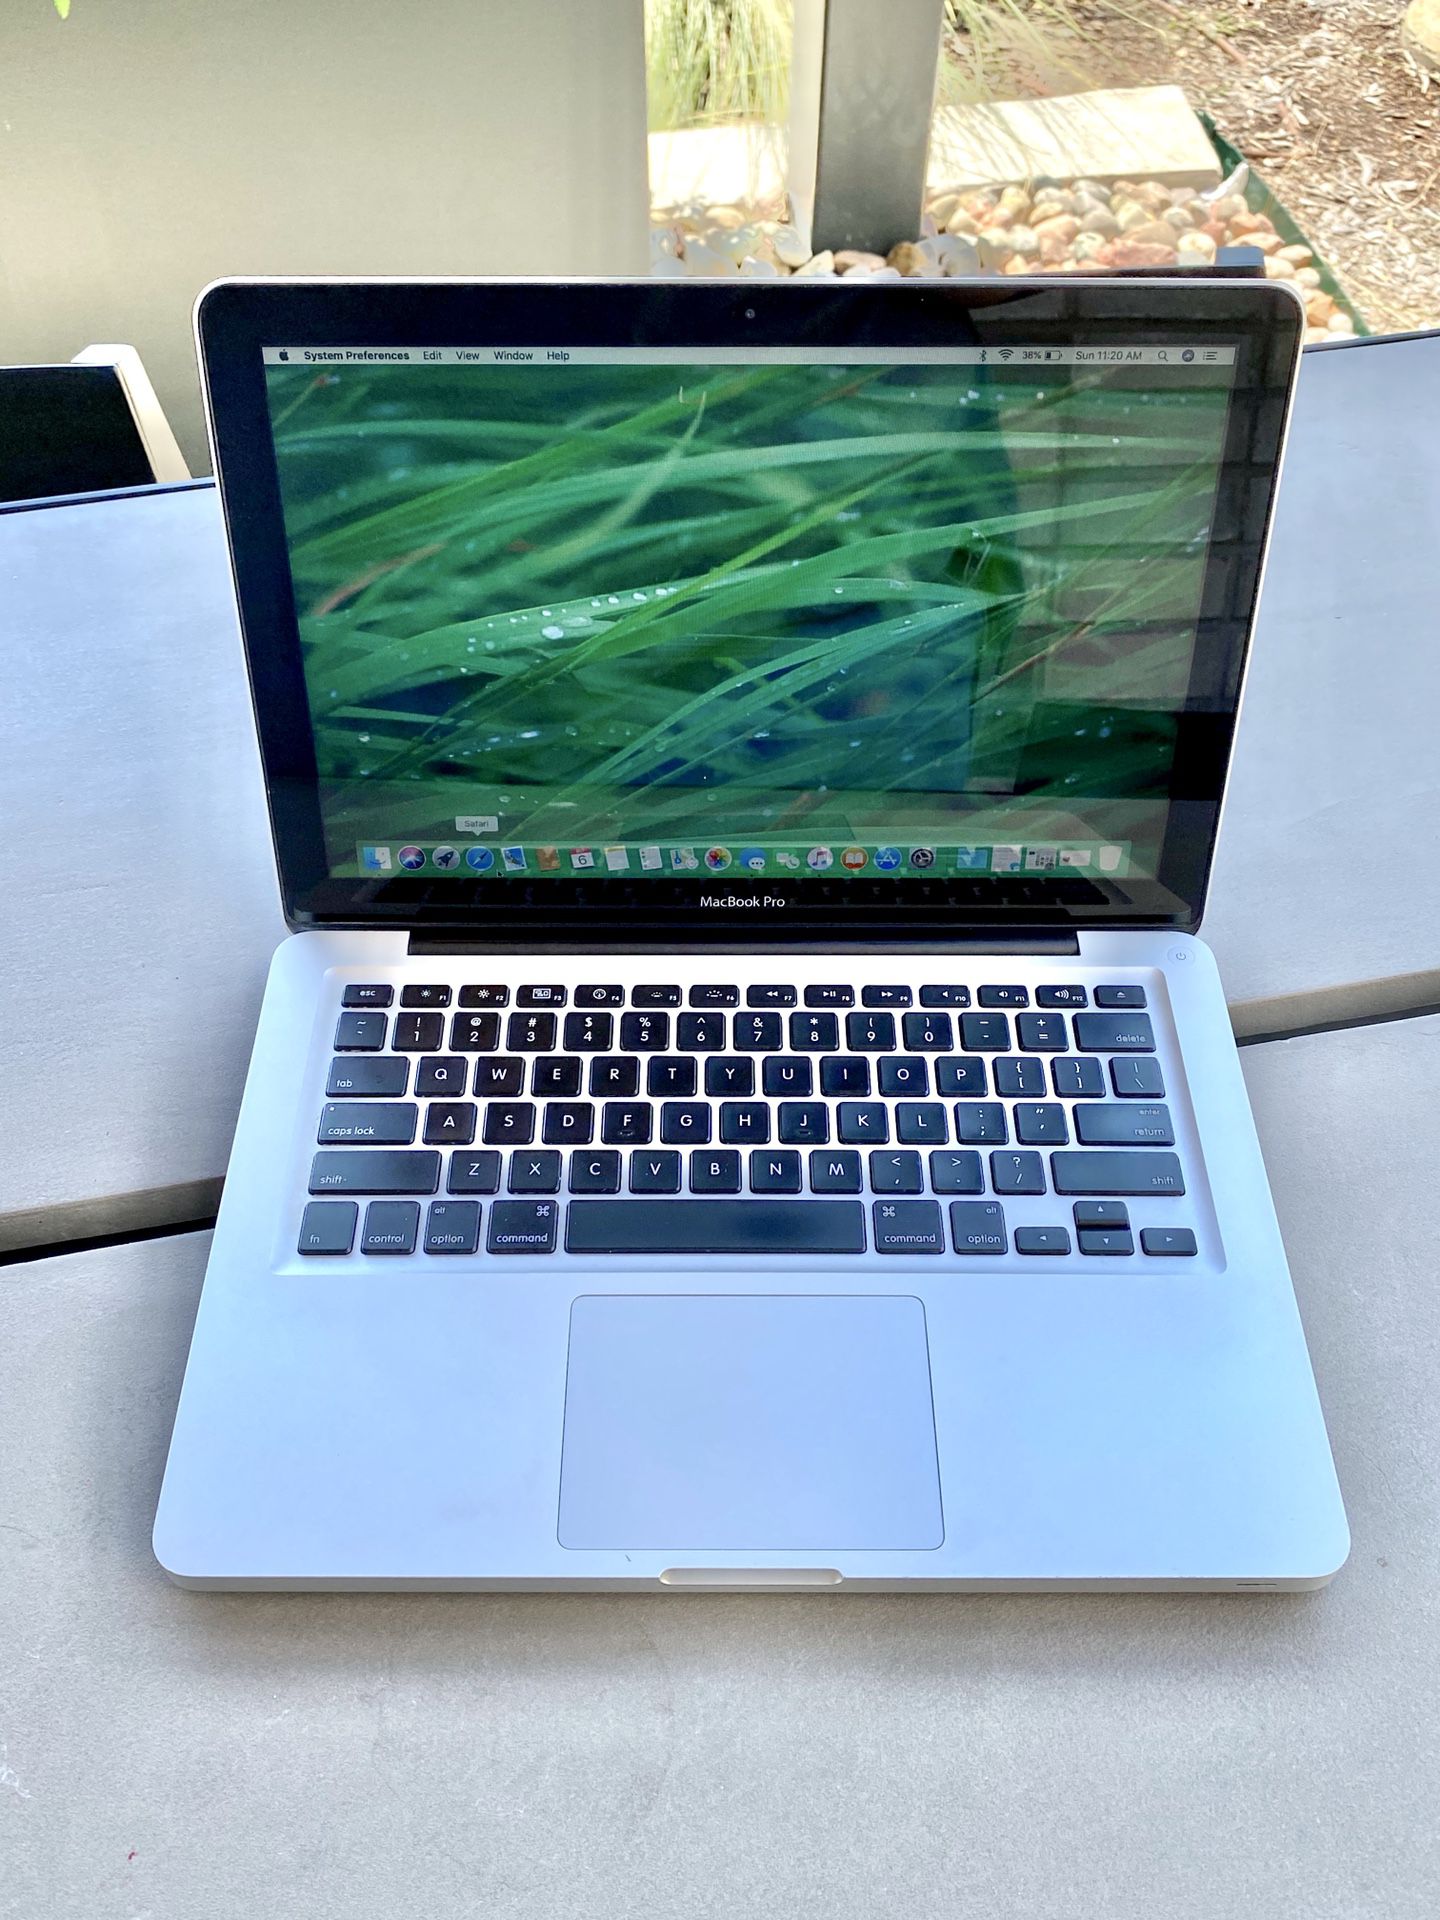 Apple MacBook pro laptop computer with top specs